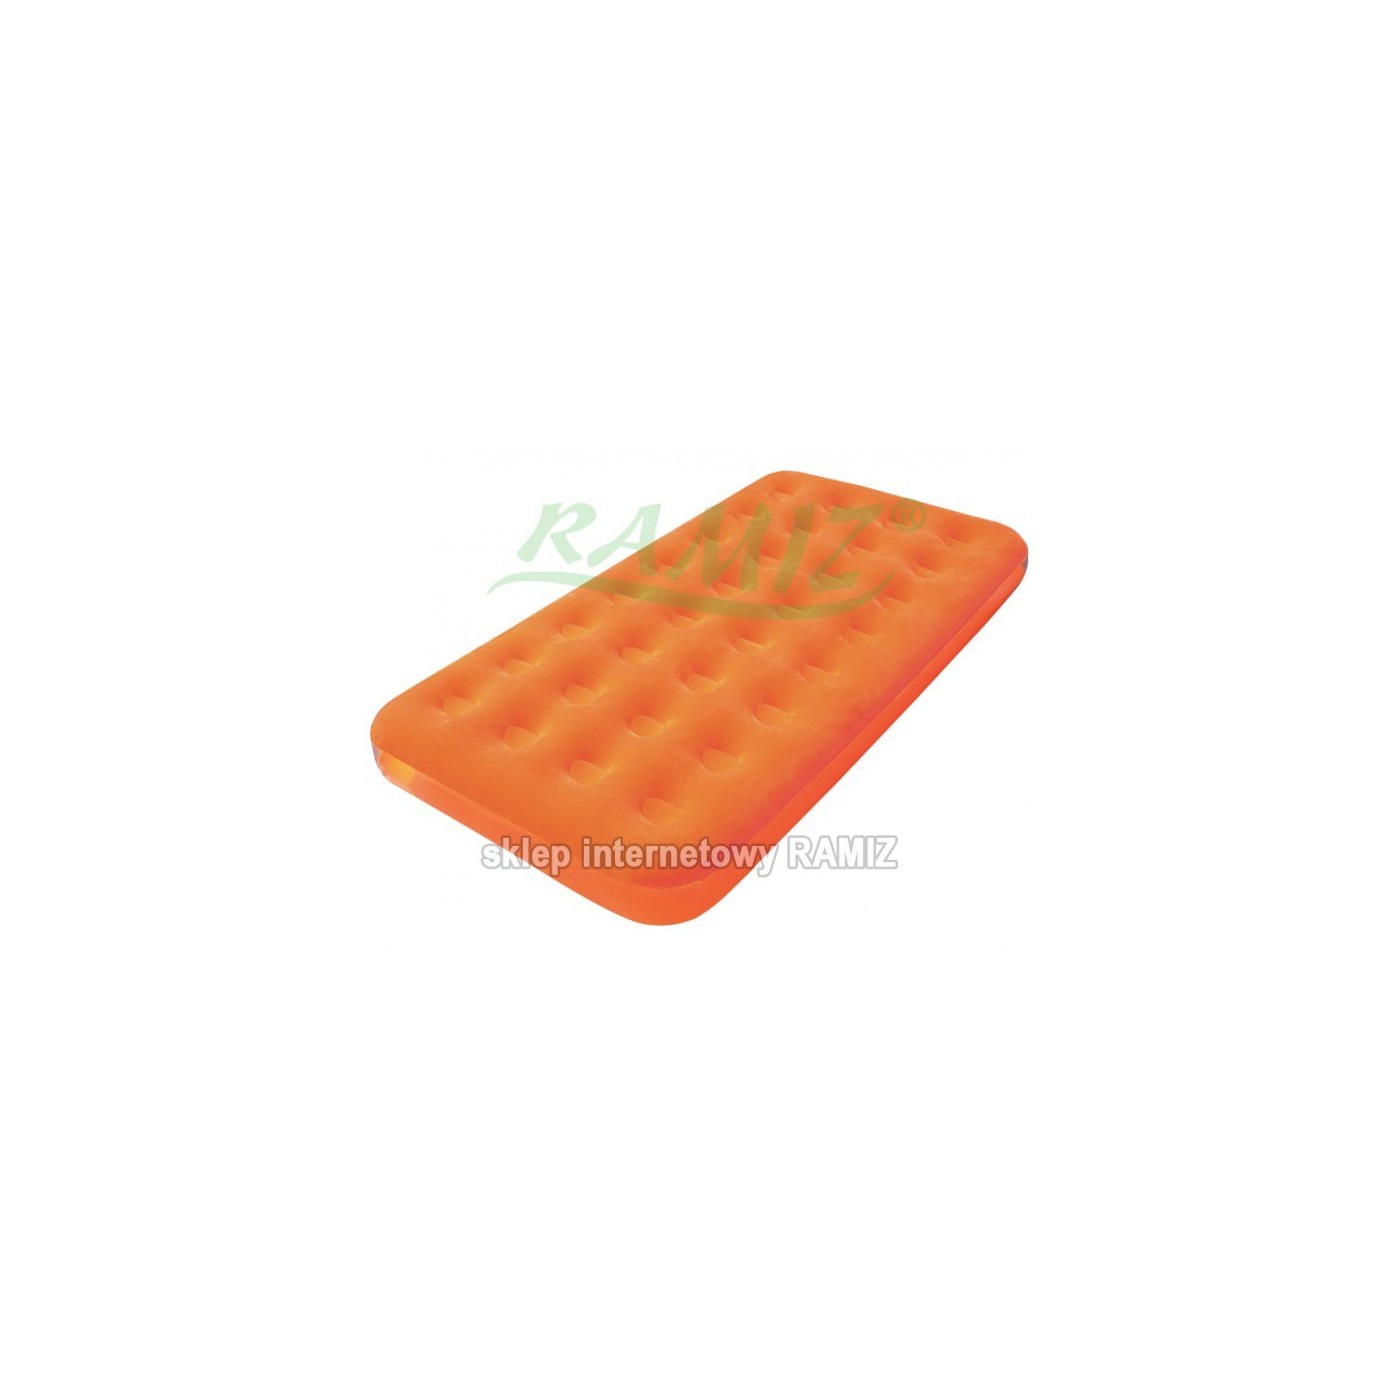 The mattress Velvet 188 99 22 cm BESTWAY Orange